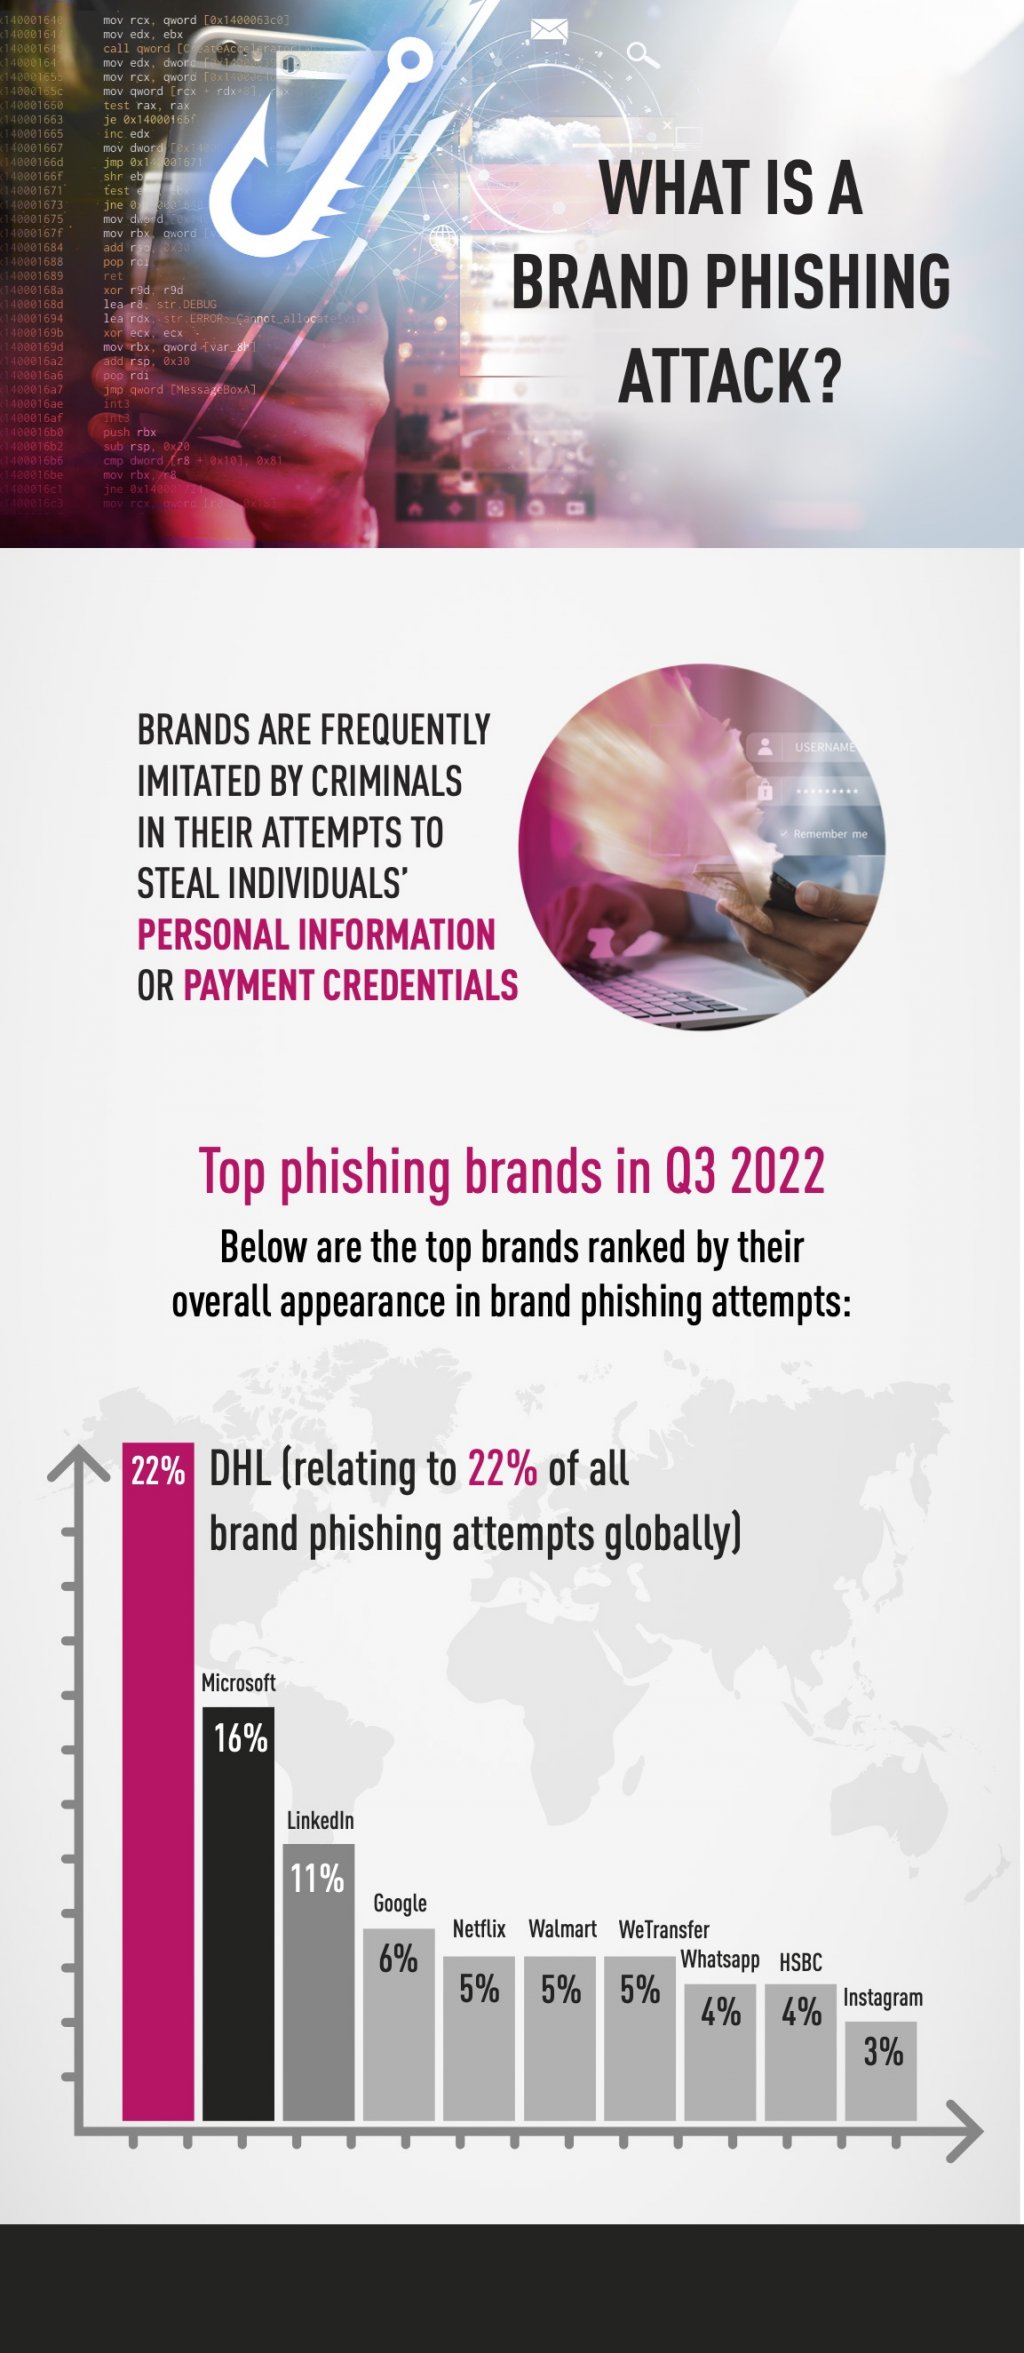 DHL najczęściej wykorzystywaną marką w hakerskich atakach phishingowych